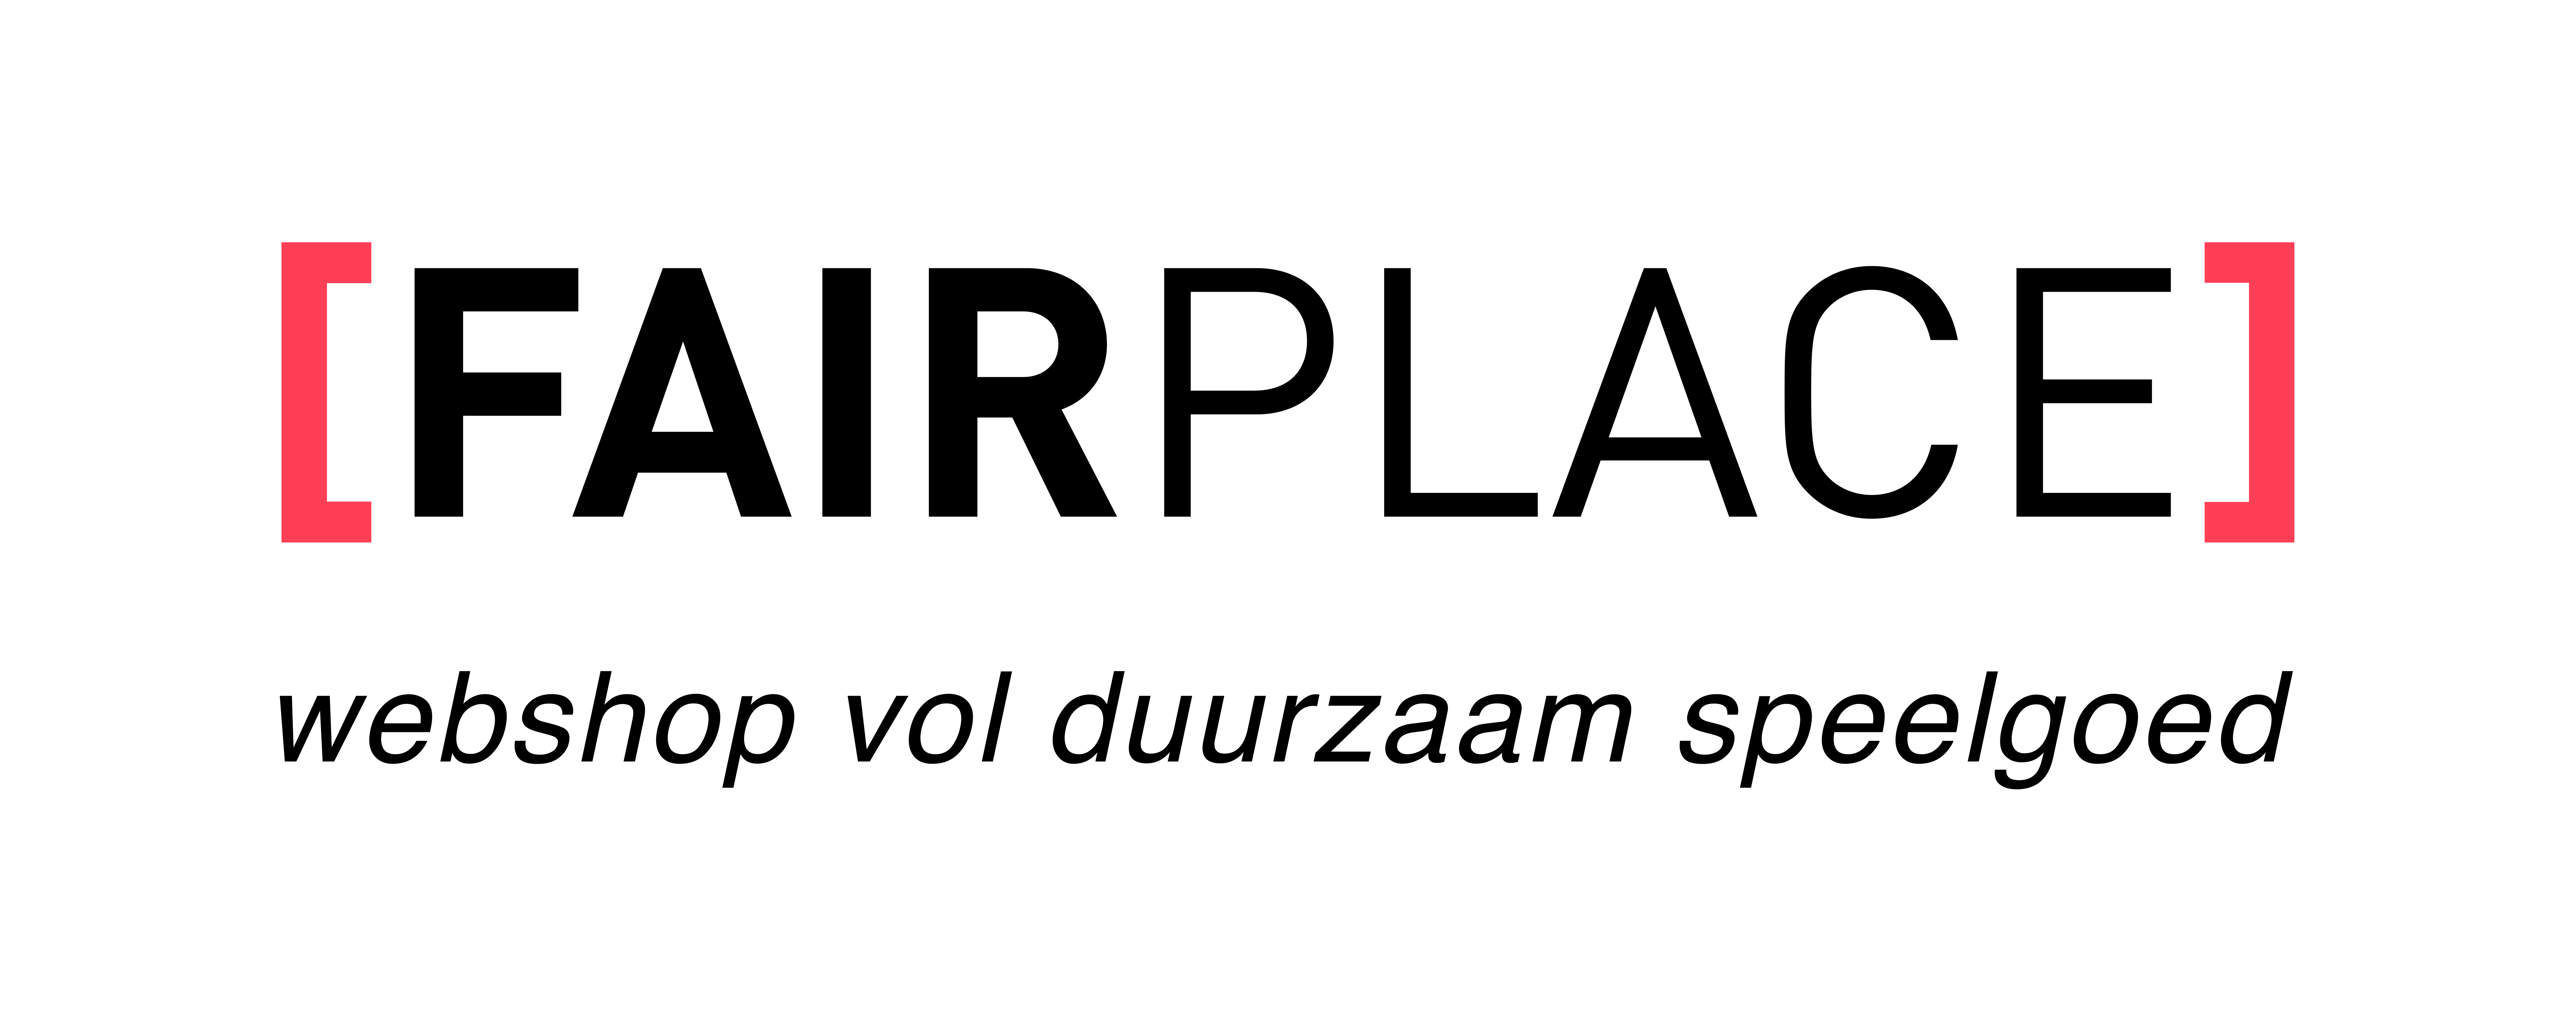 Fairplace promotie : Dag van de webshop